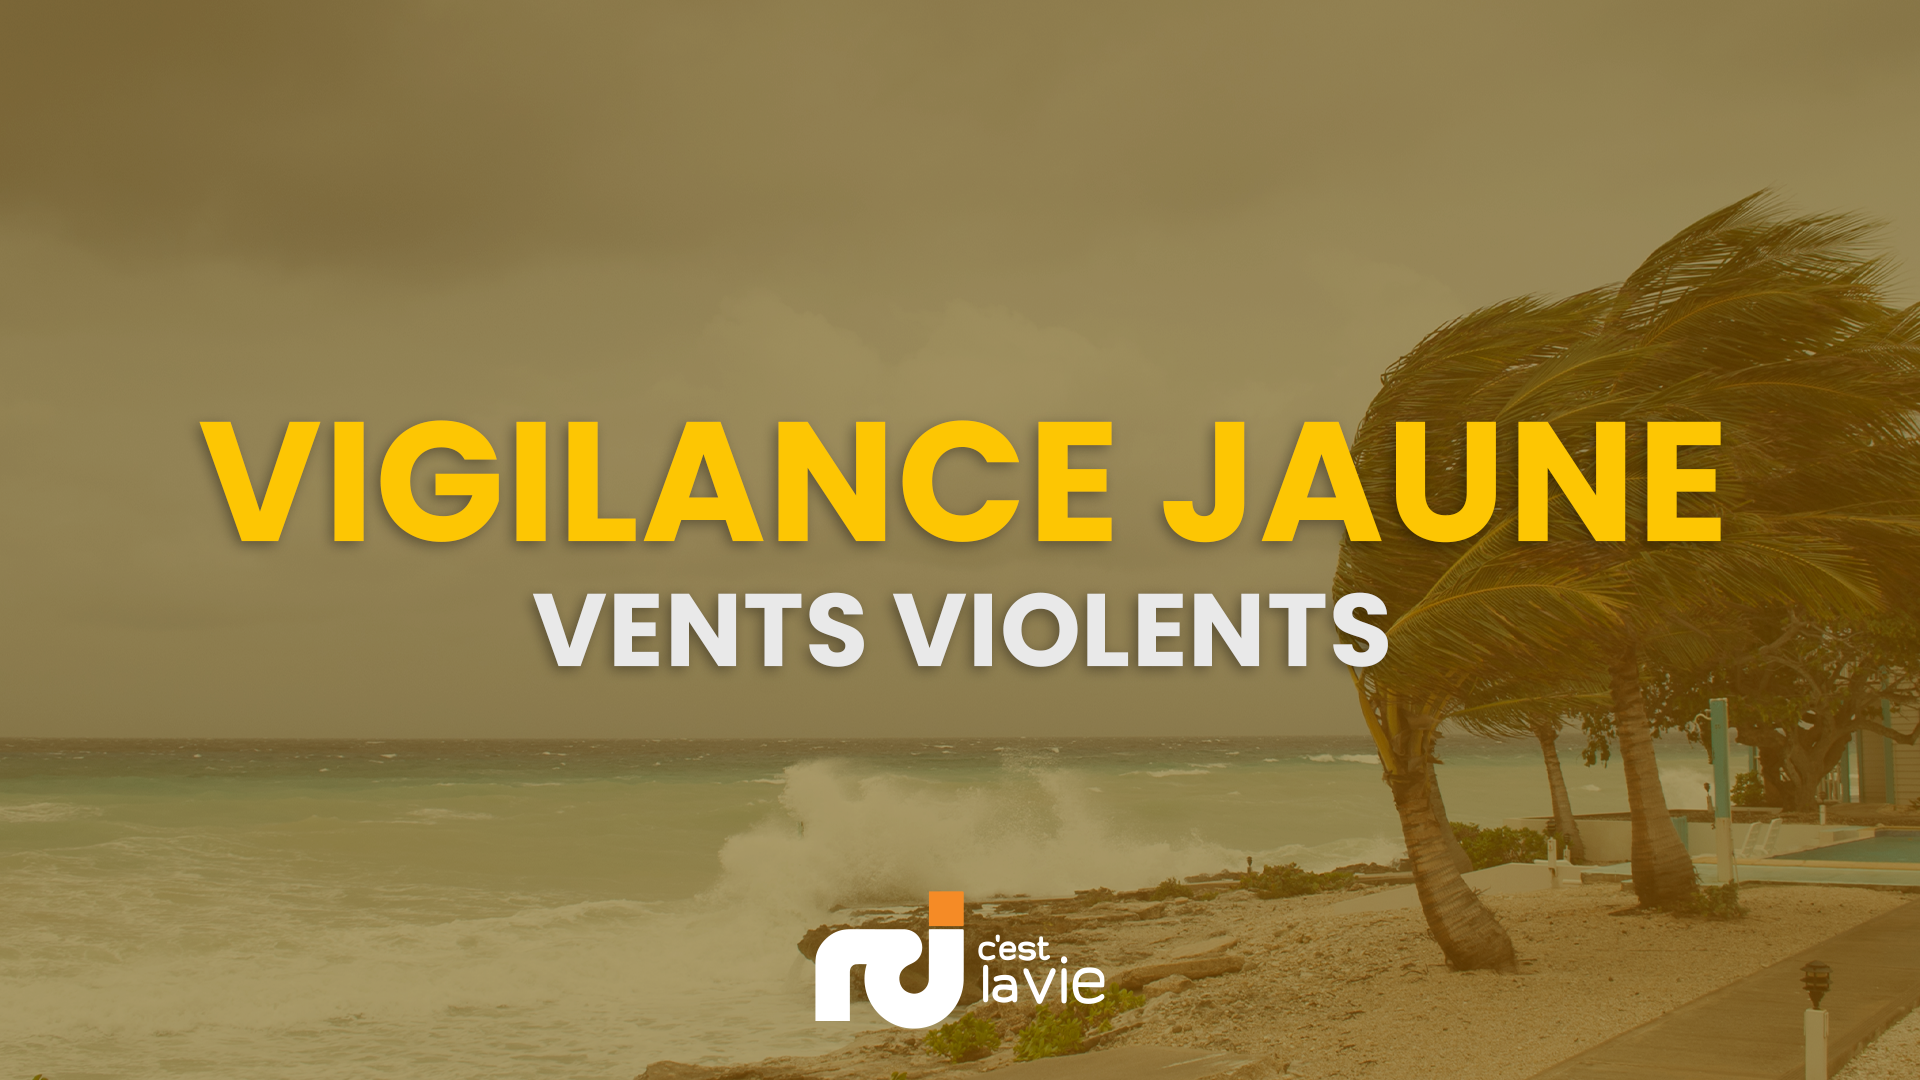     Pluies et orages, houle, vents violents : la Guadeloupe en vigilance jaune

